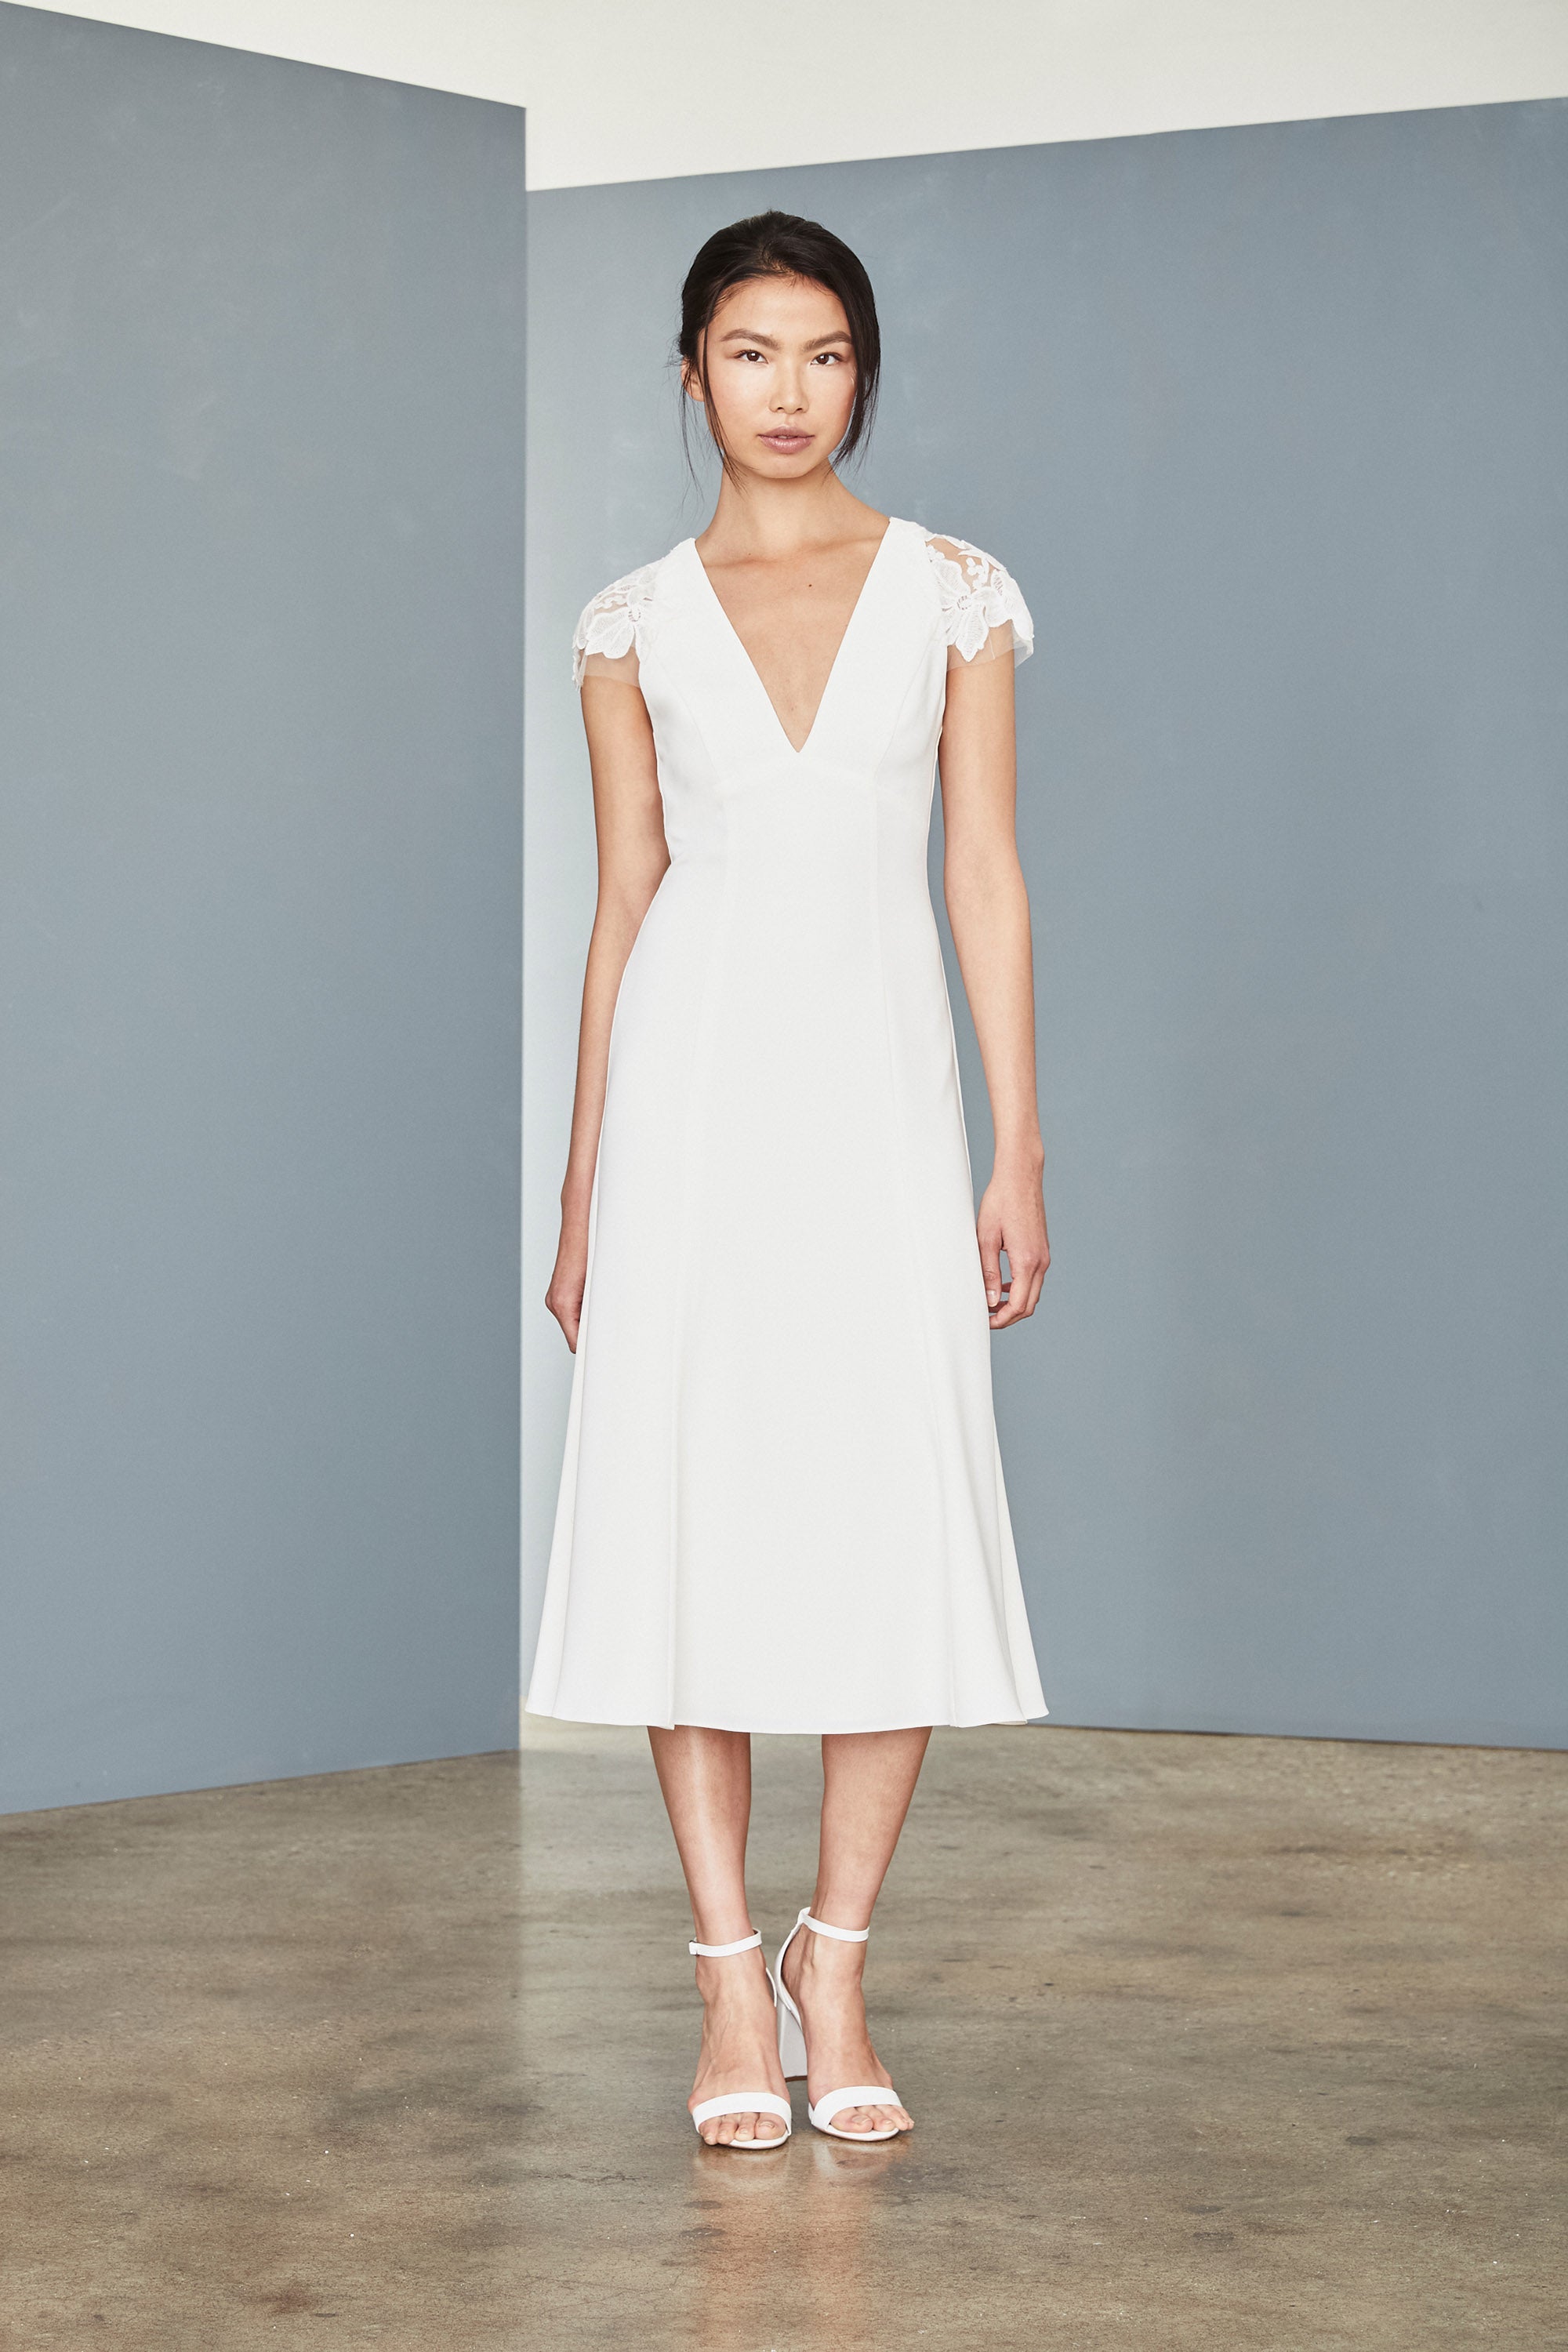 flattering white dress